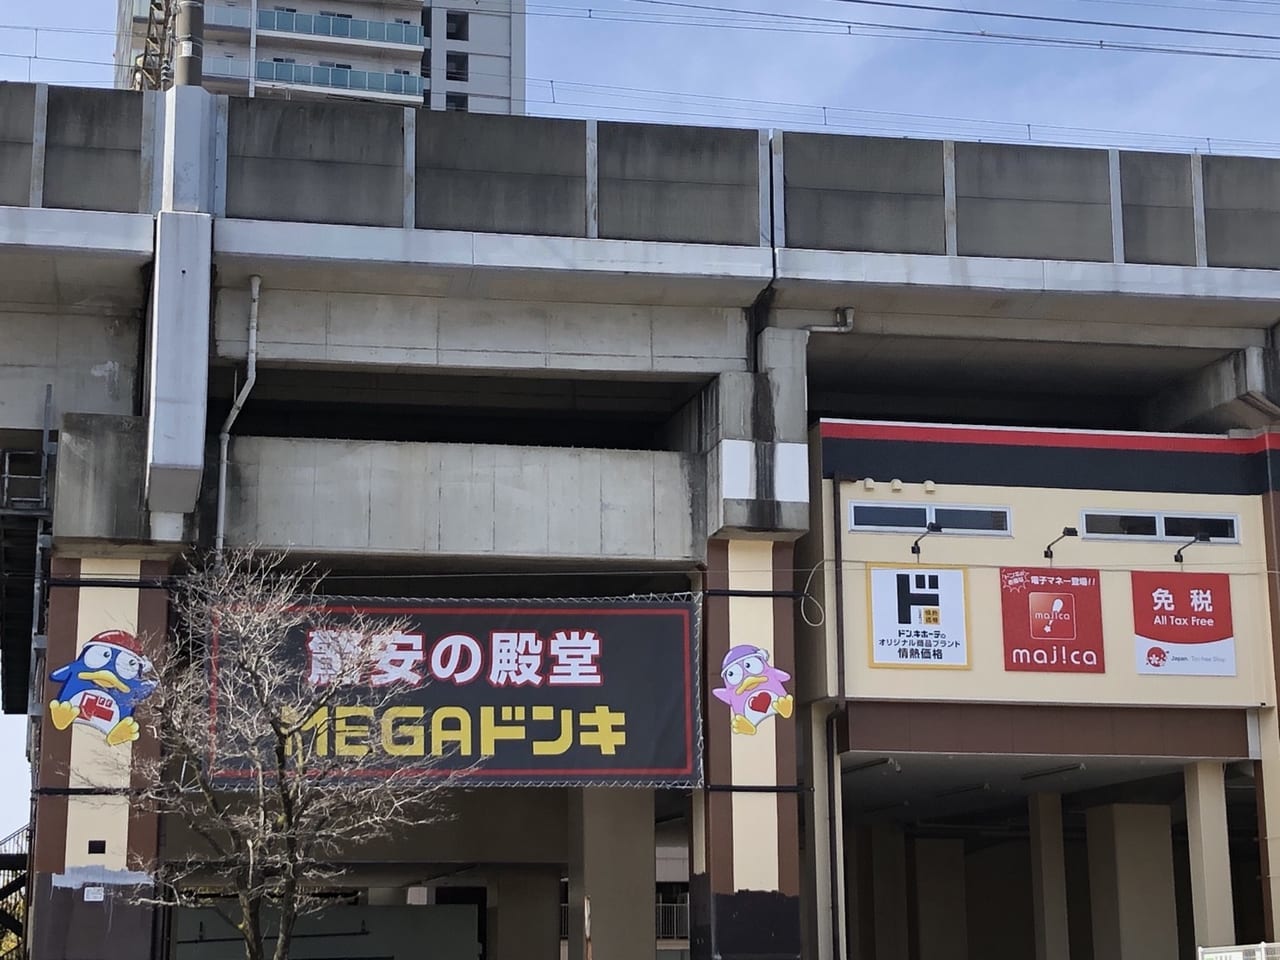 MEGAドン・キホーテ_武蔵浦和店の外壁